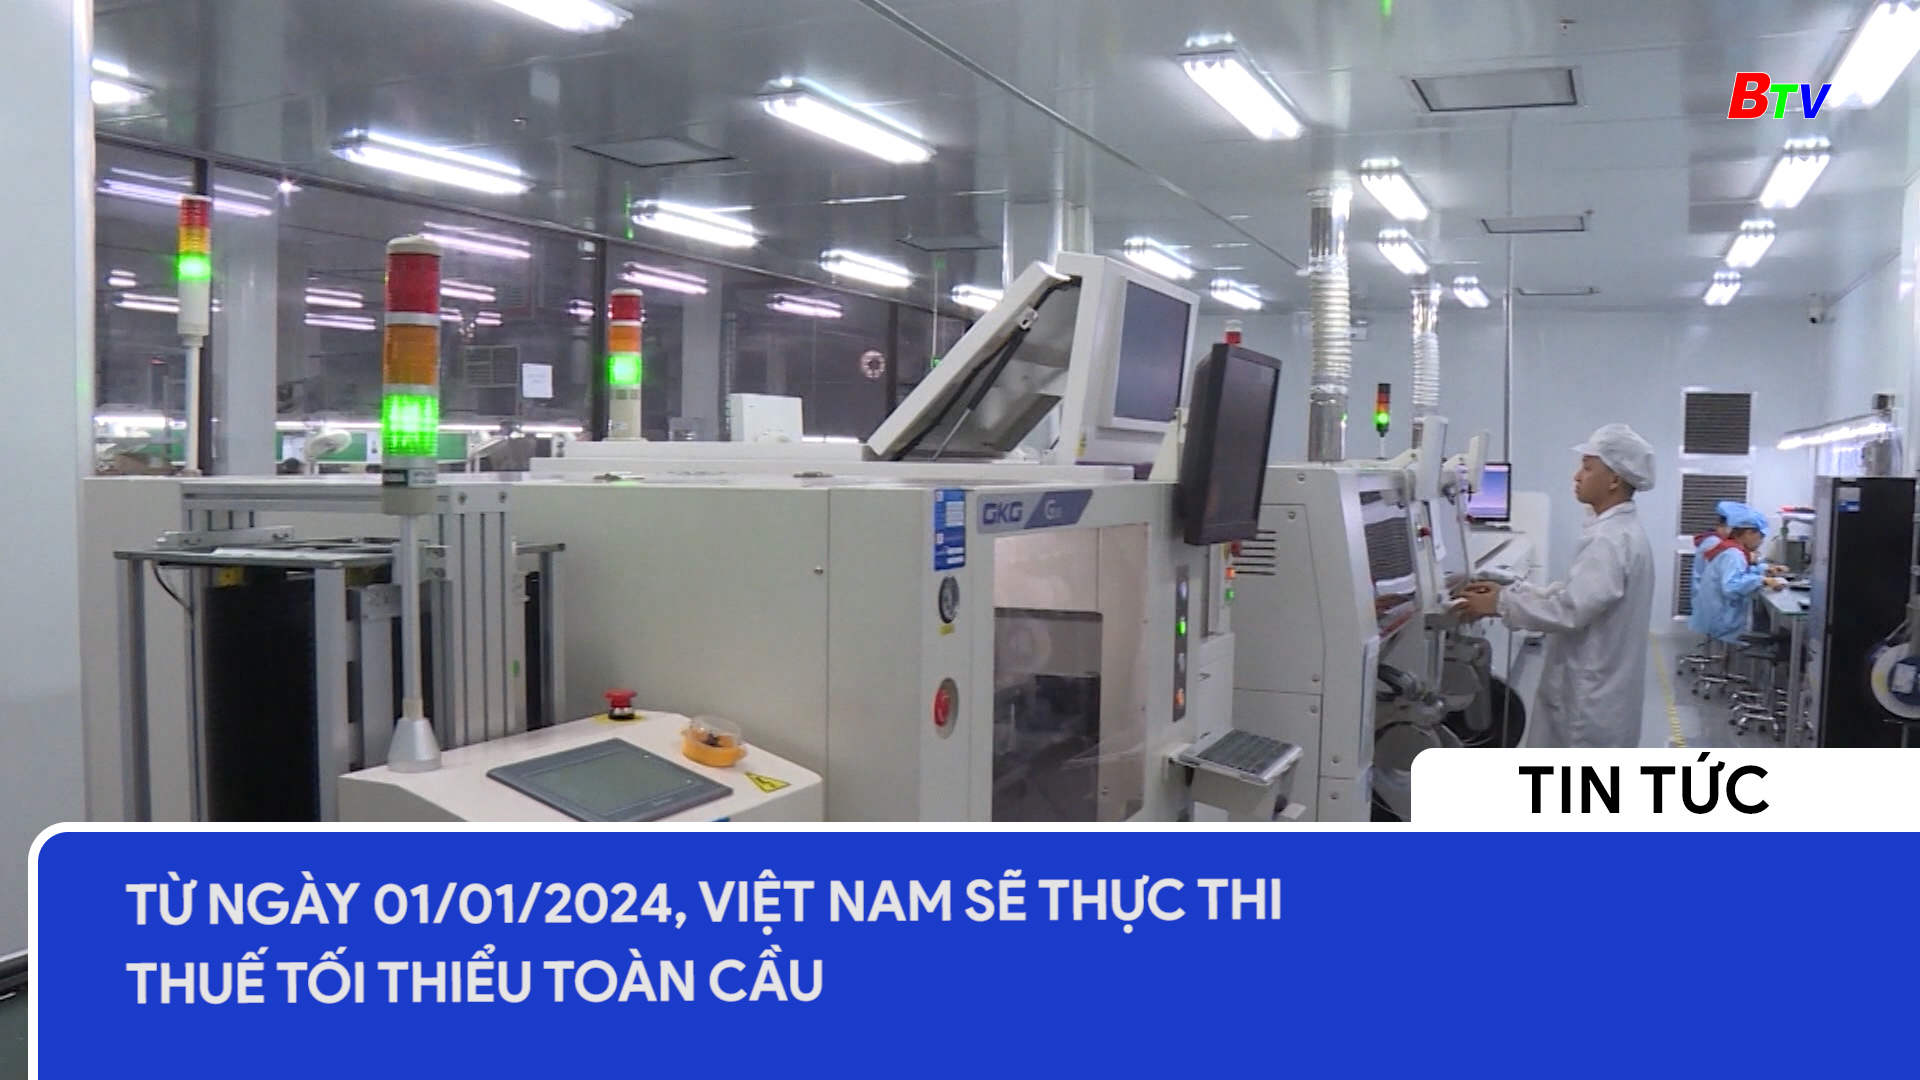 Từ ngày 01/01/2024, Việt Nam sẽ thực thi thuế tối thiểu toàn cầu